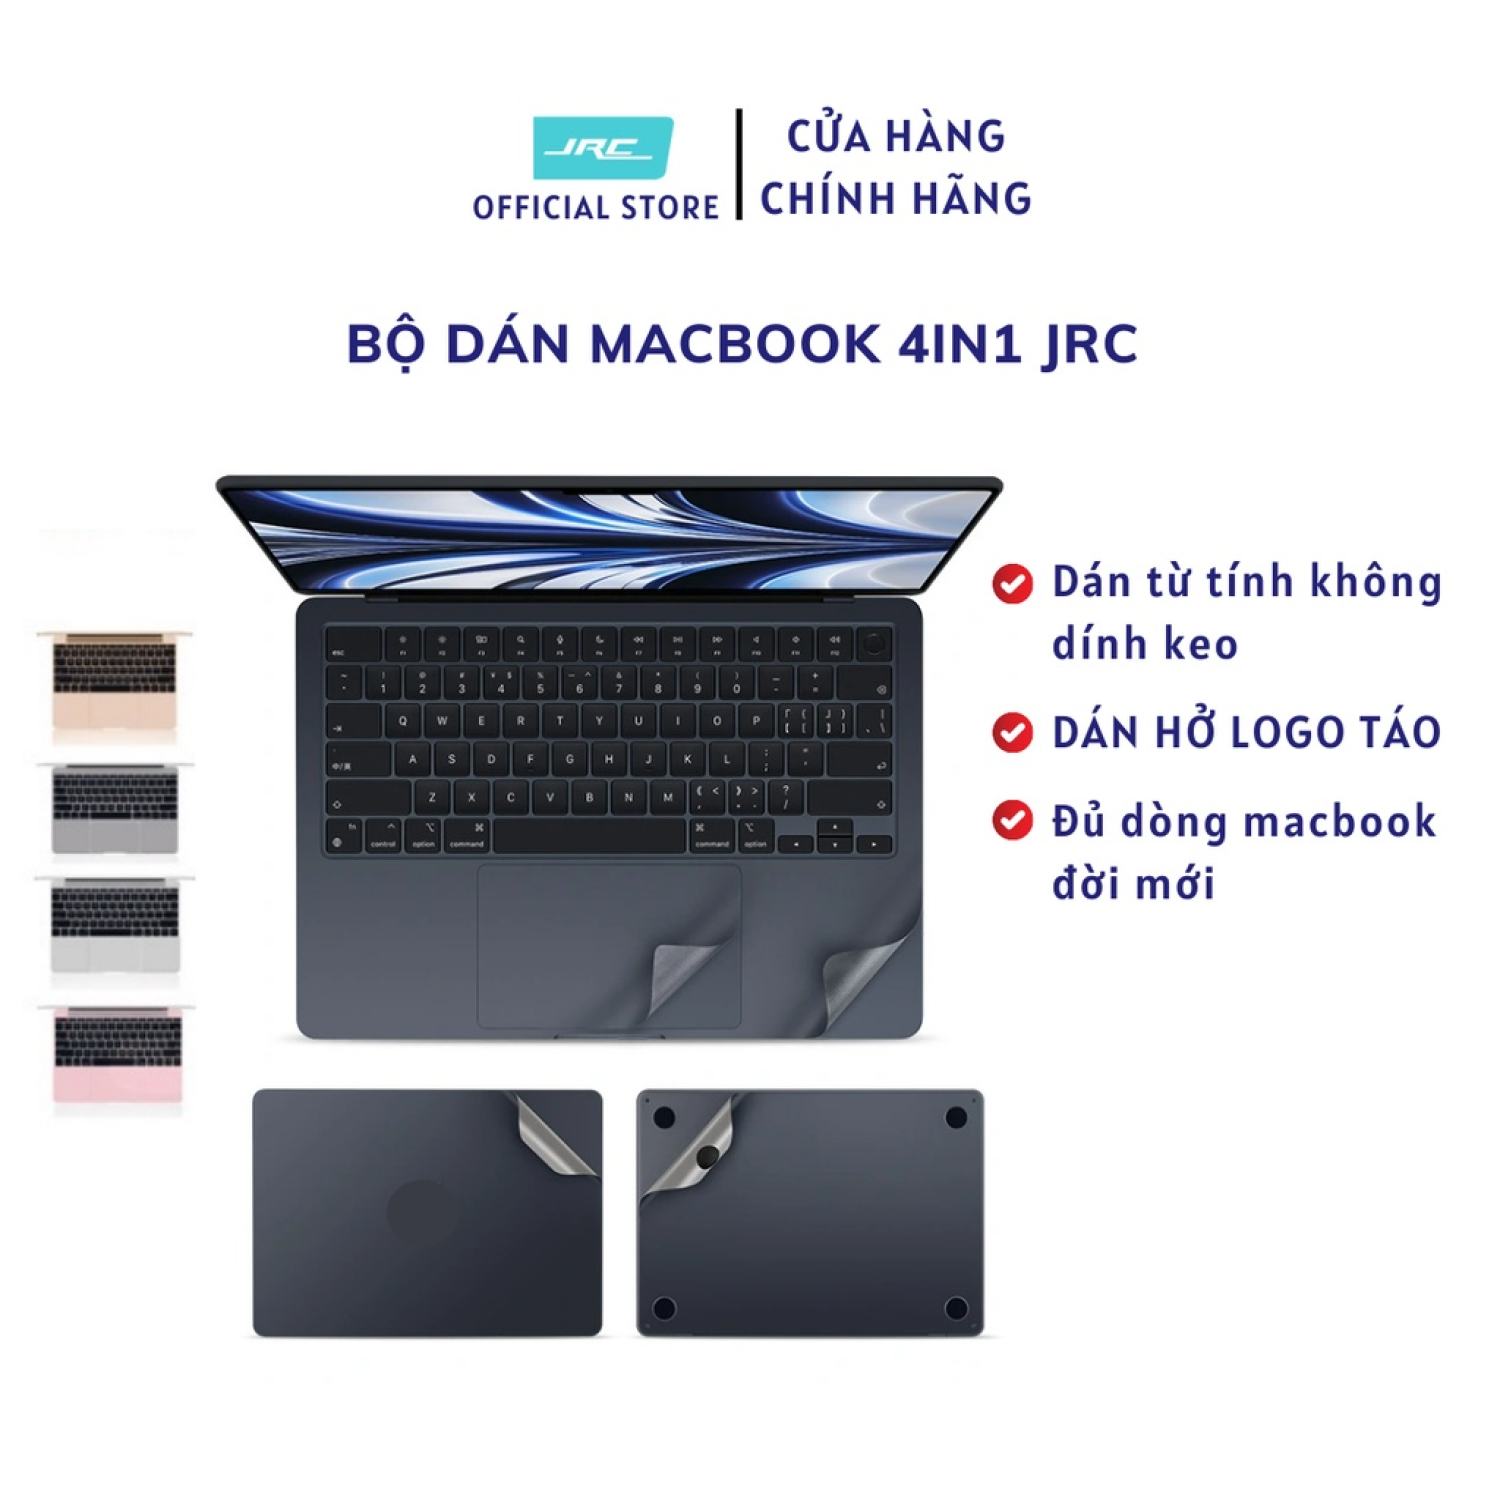 Bộ dán Macbook JRC 4in1 chống xước độ bền cao, đủ màu cho các dòng Macbook air, pro đời mới ƞhất